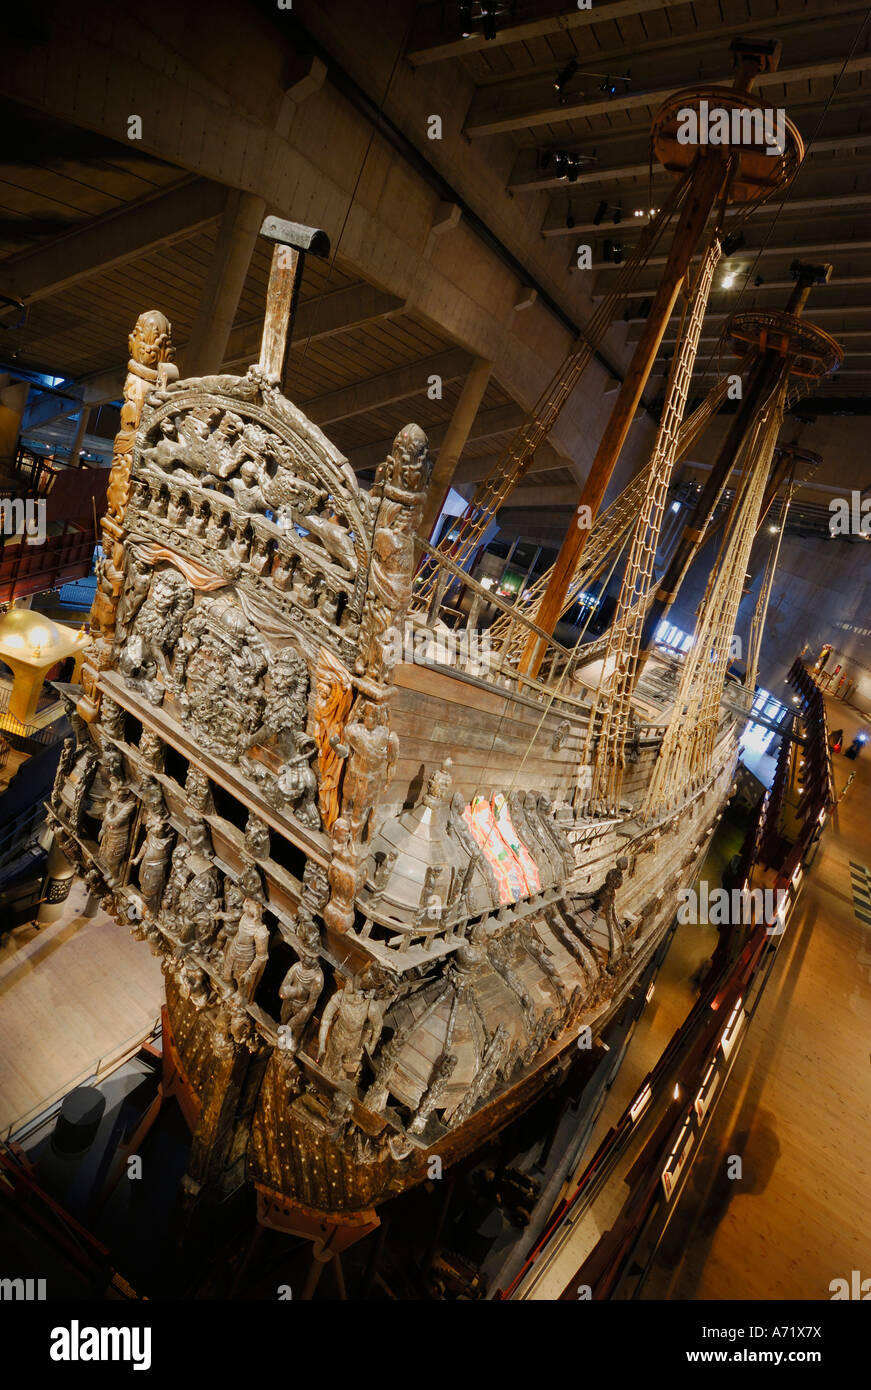 Le cuirassé du 17ème siècle bien conservé au musée Vasa Vasa à Stockholm est l'une des plus grandes attractions touristiques de la Suède Banque D'Images